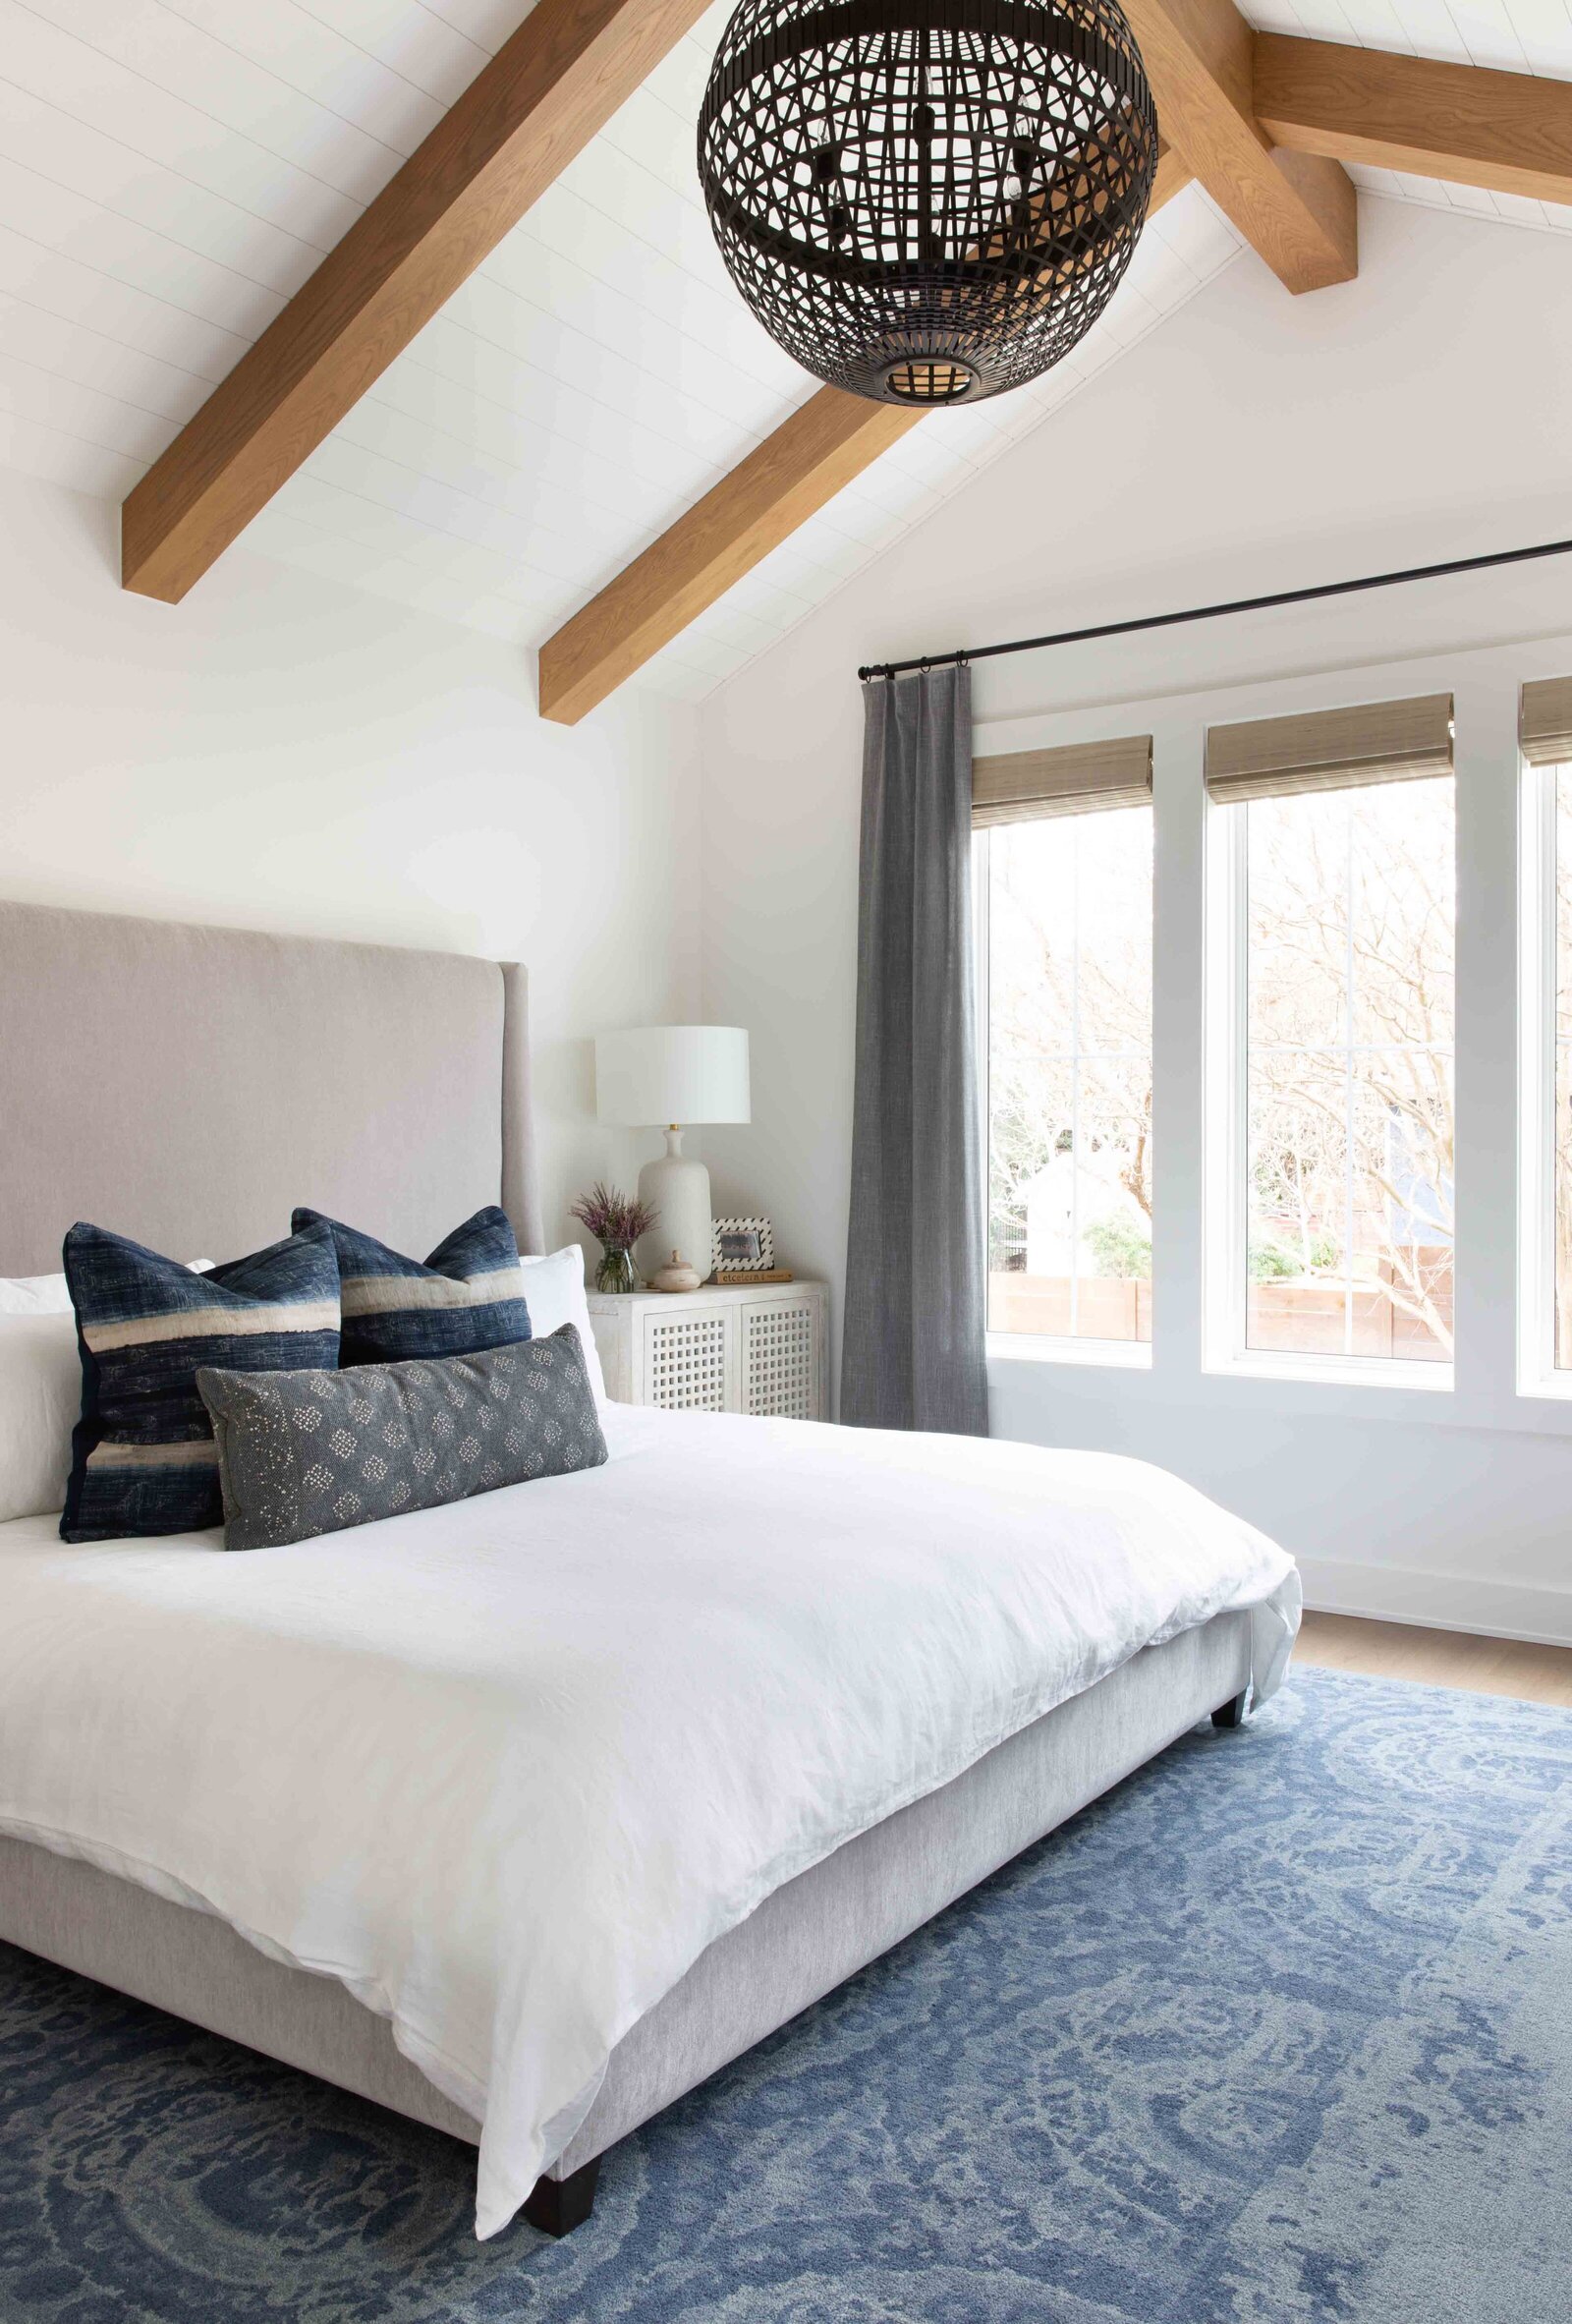 Nuela Designs Bedroom Ceiling Beams Shiplap